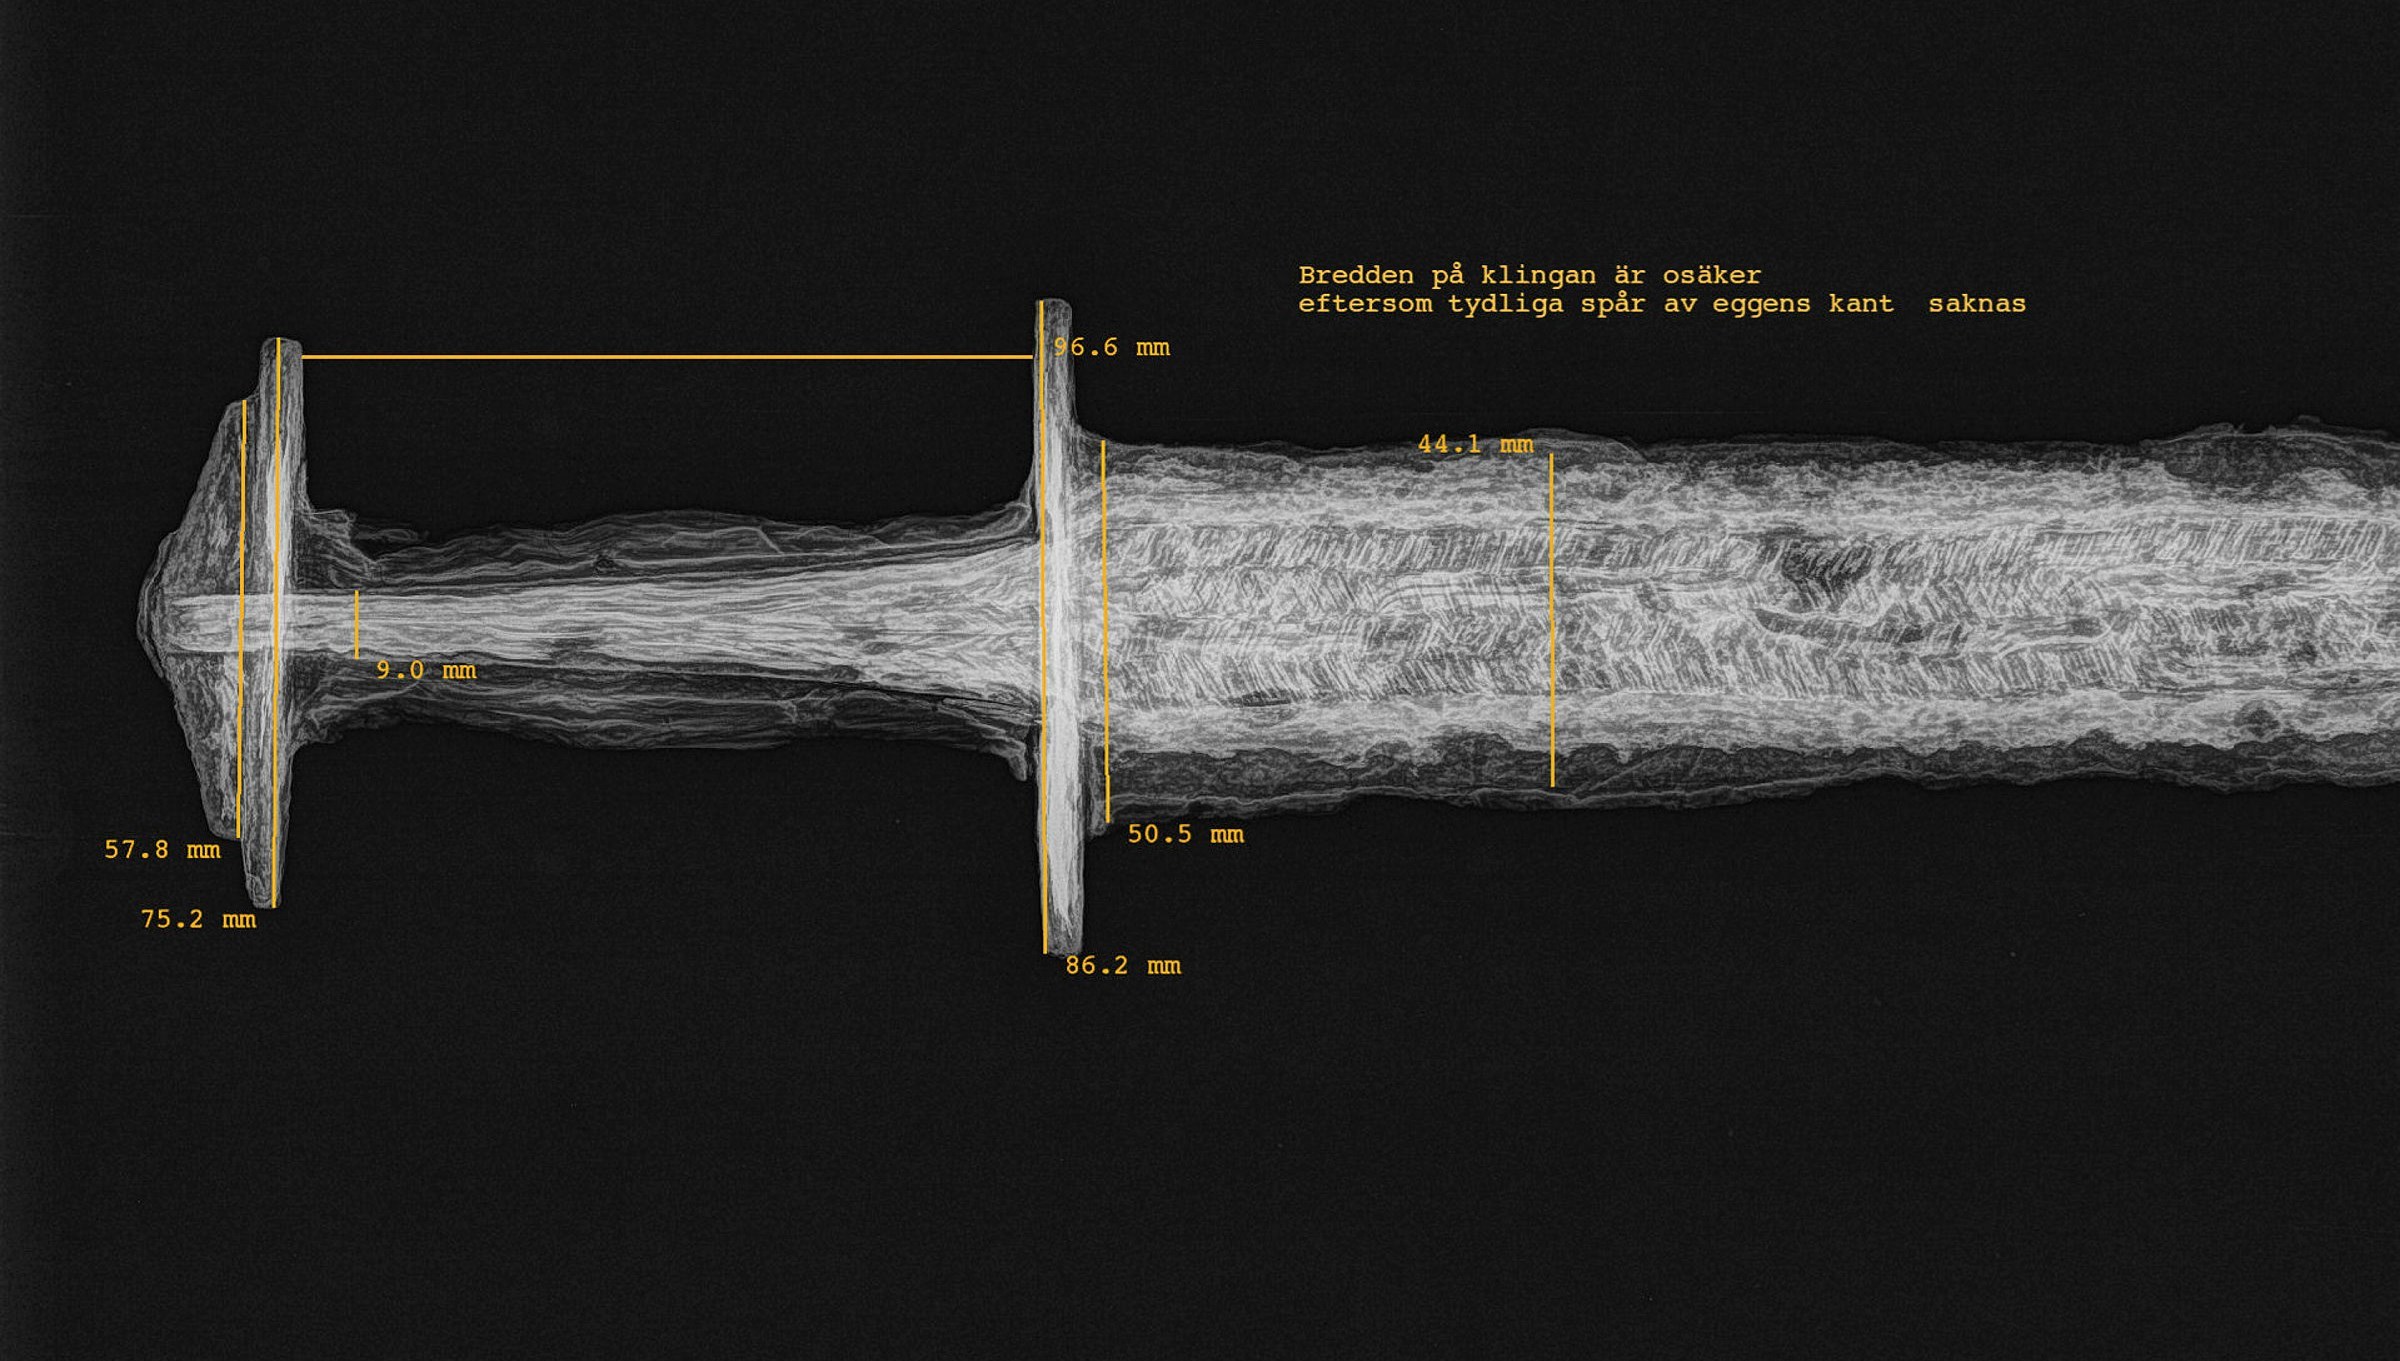 en röntgenbild av ena halvan av ett svärd. Svärdsknapp, parerstång och övre delen av svärdet syns. På bilden finns också måttangivelser.